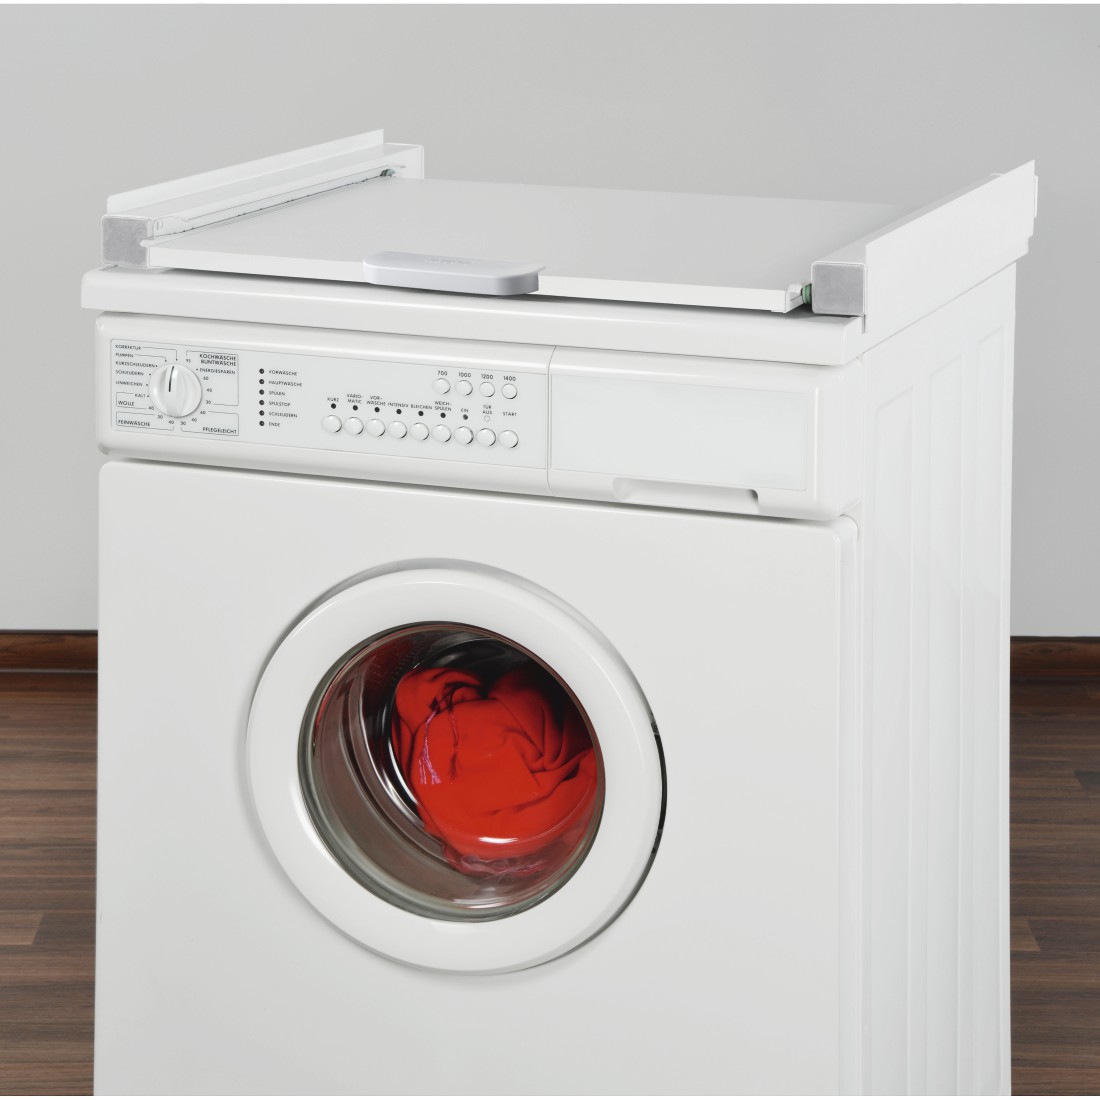 awx Druckfähige Anwendung - Xavax, Zwischenbaurahmen für Waschmaschine und Trockner, mit Auszug als Ablage